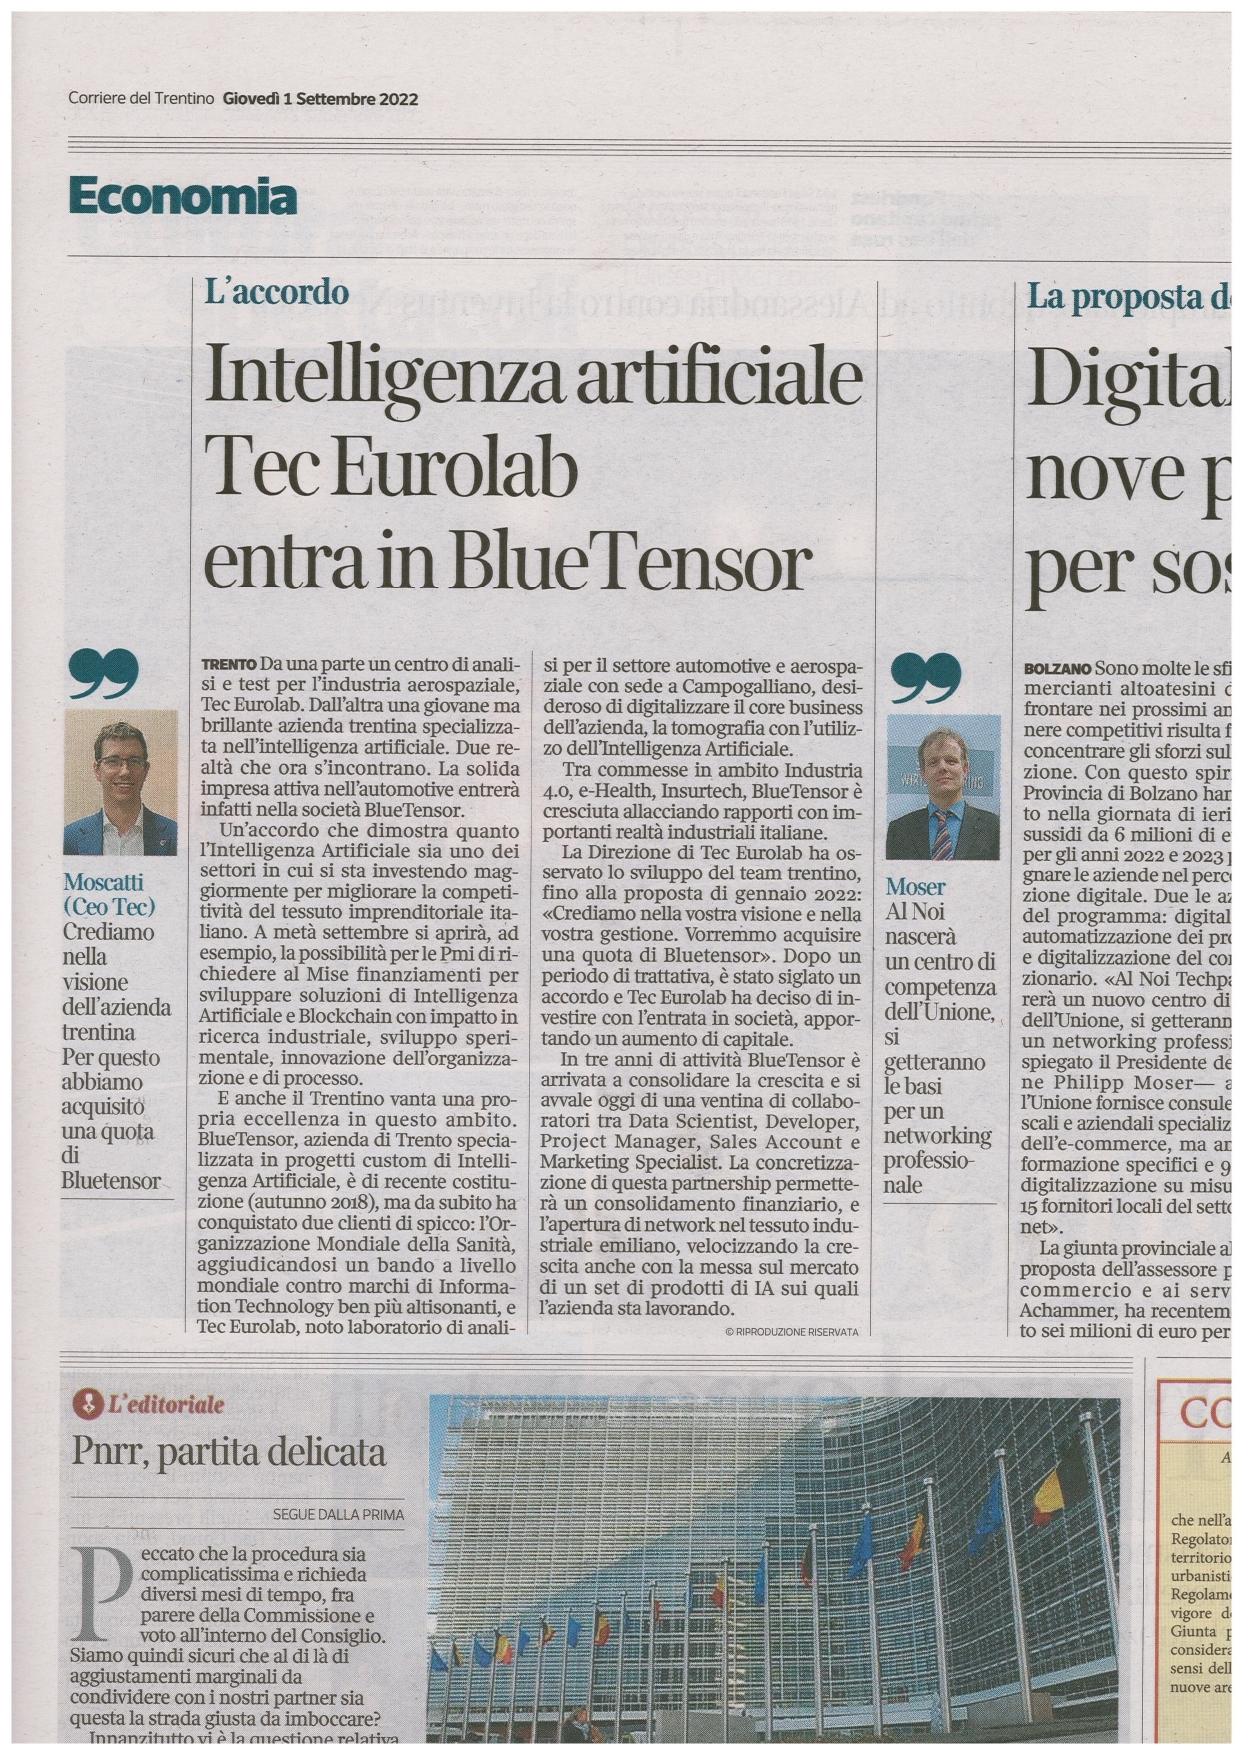 Corriere del Trentino / 1 settembre 2022